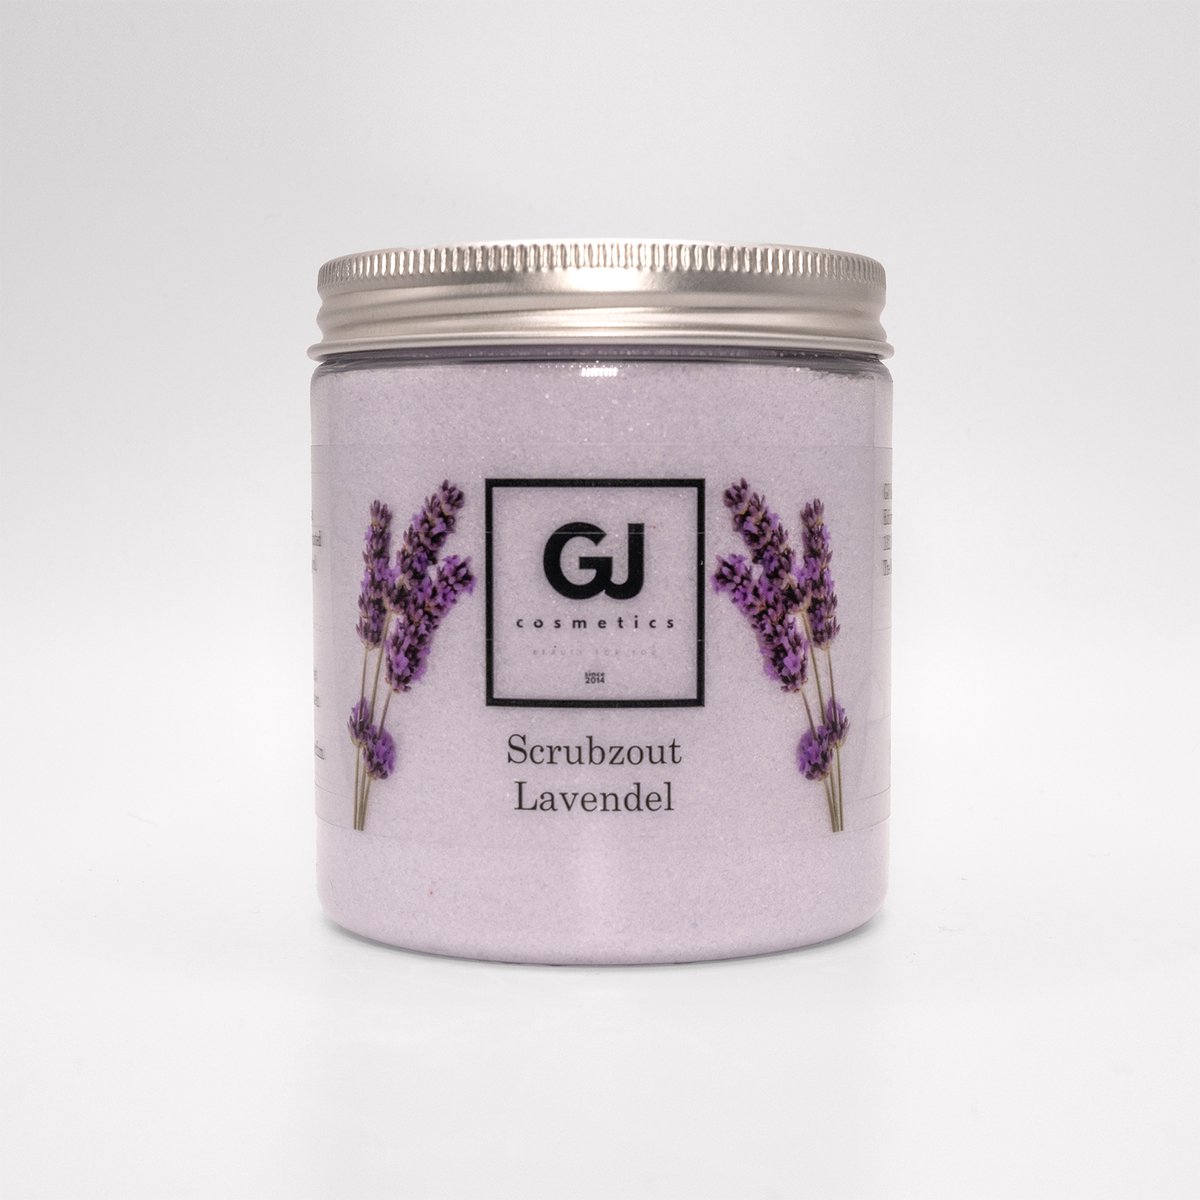 GJ Cosmetics Scrubzout Lavendel